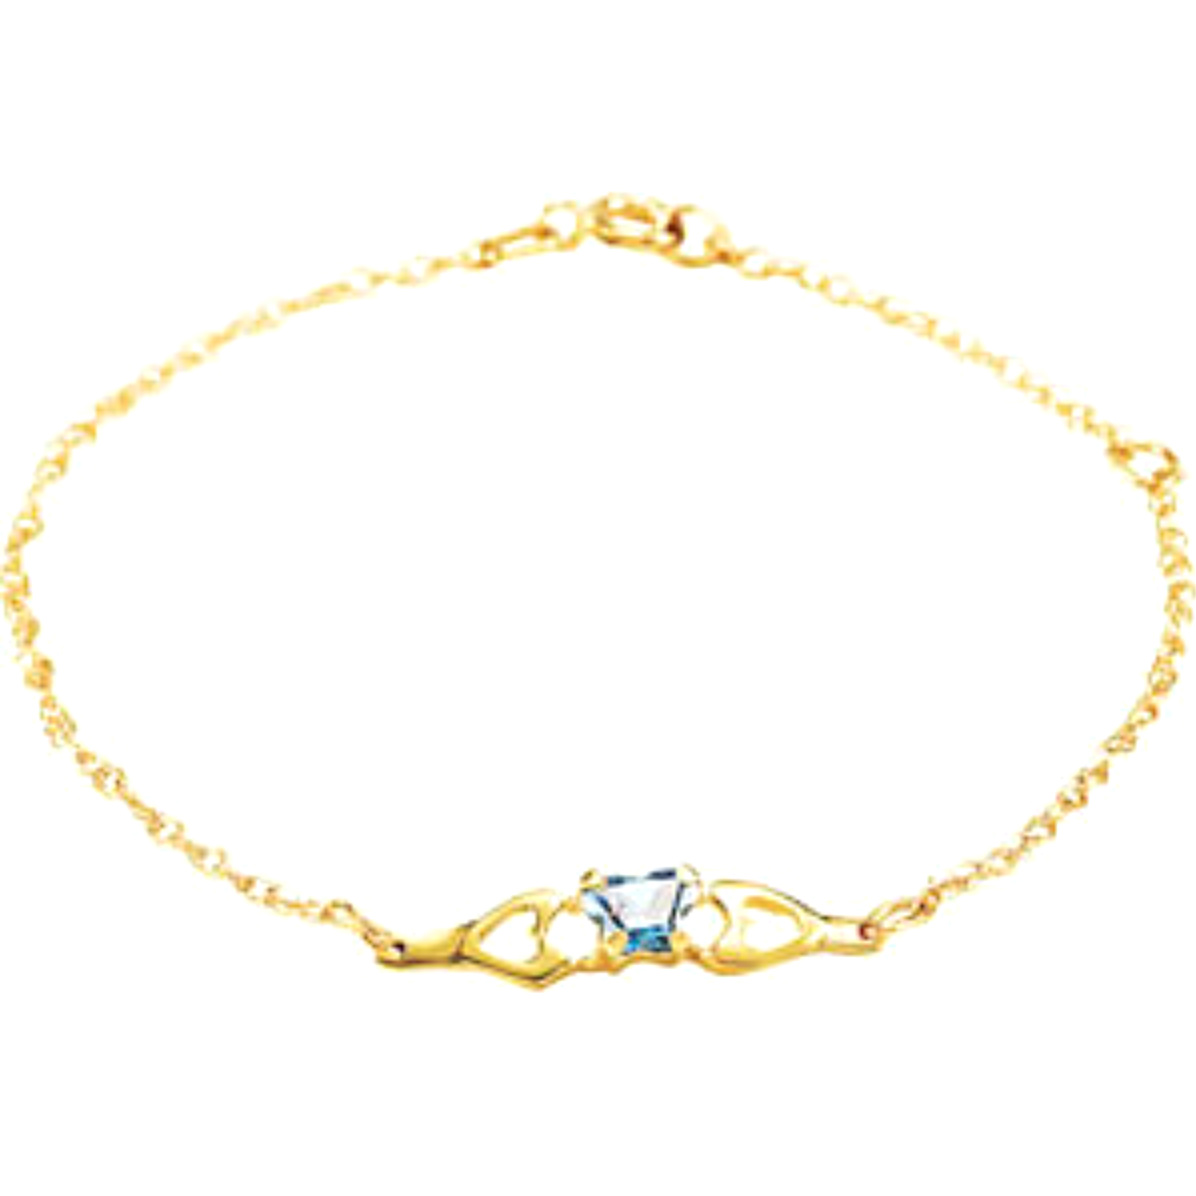 Girl's 'Bfly' September Birthstone Bracelet in 10k Yellow Gold, 4.1"